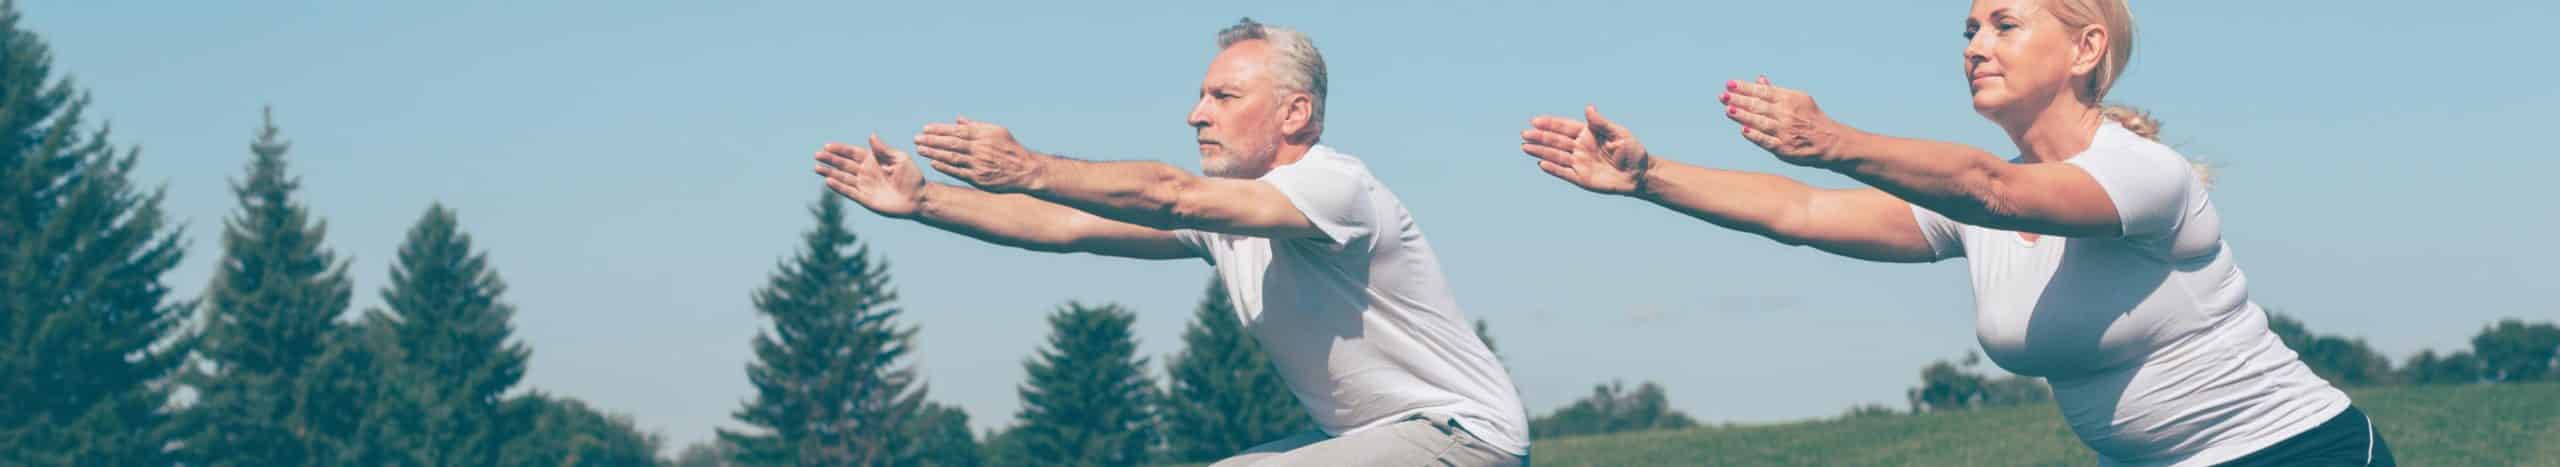 Exercises to Strengthen Legs for Seniors